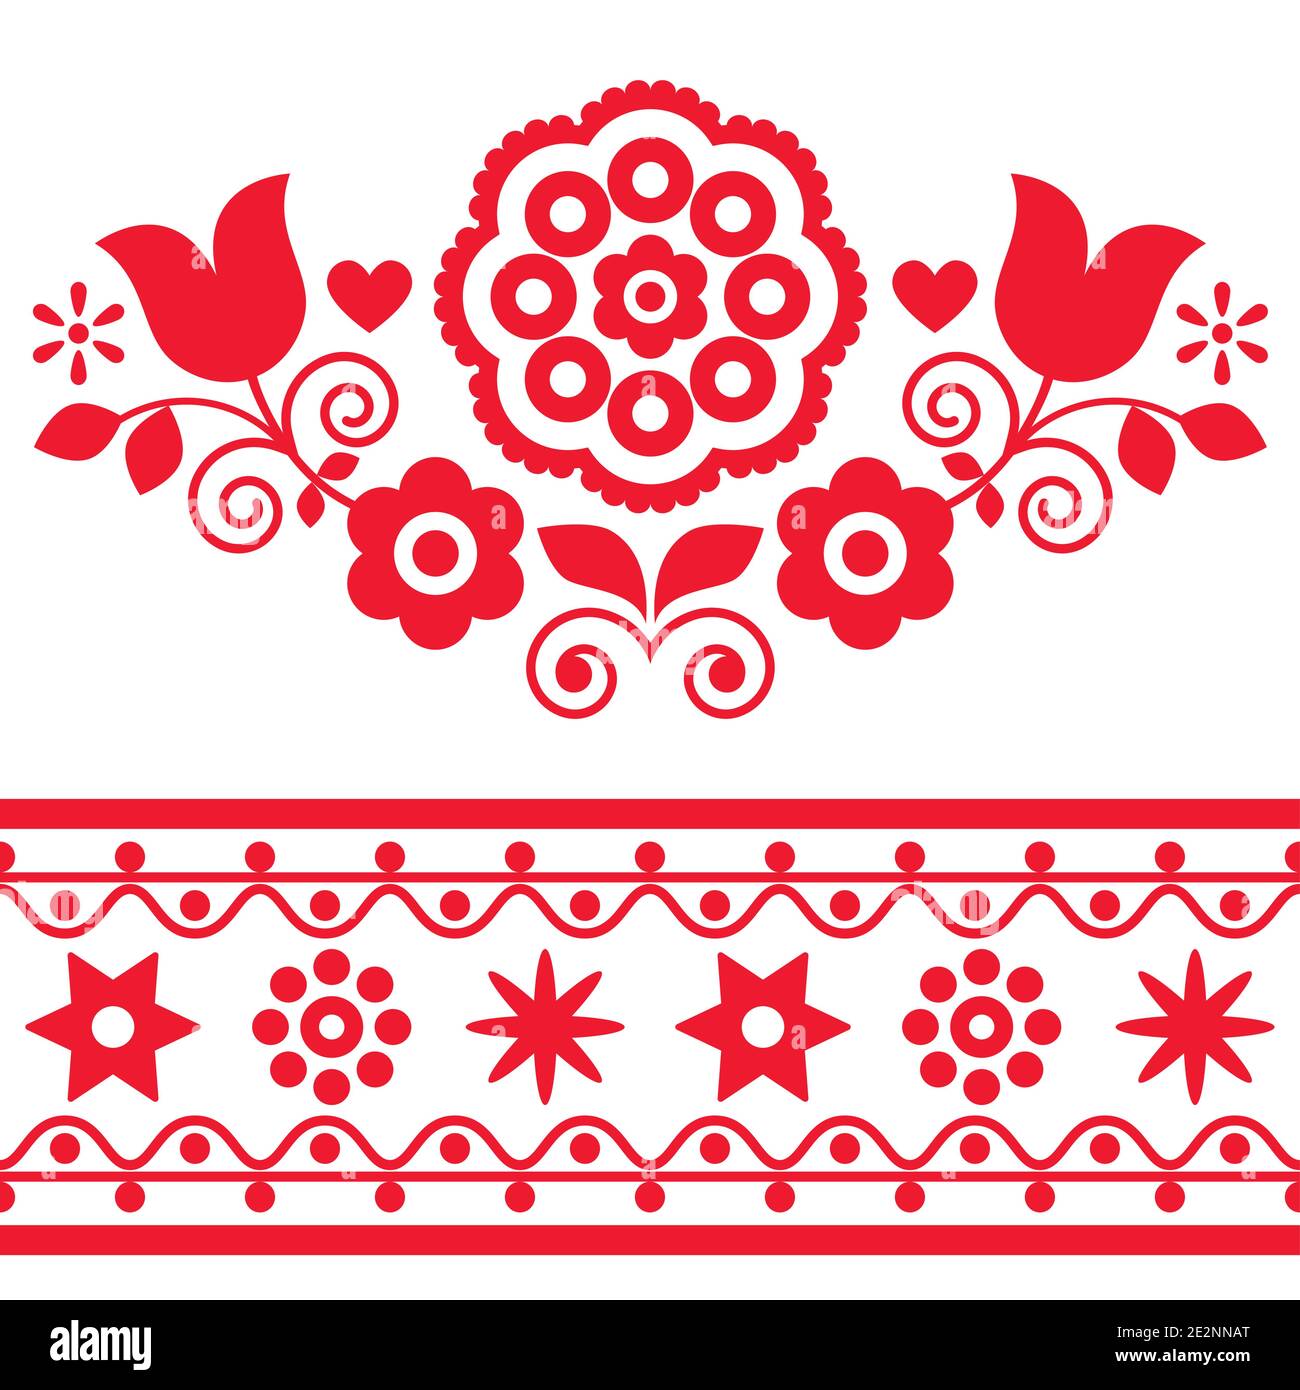 Collection d'éléments de dessin vectoriel d'art folklorique polonais avec fleurs et coeurs - parfait pour une carte de vœux ou une invitation à un mariage Illustration de Vecteur